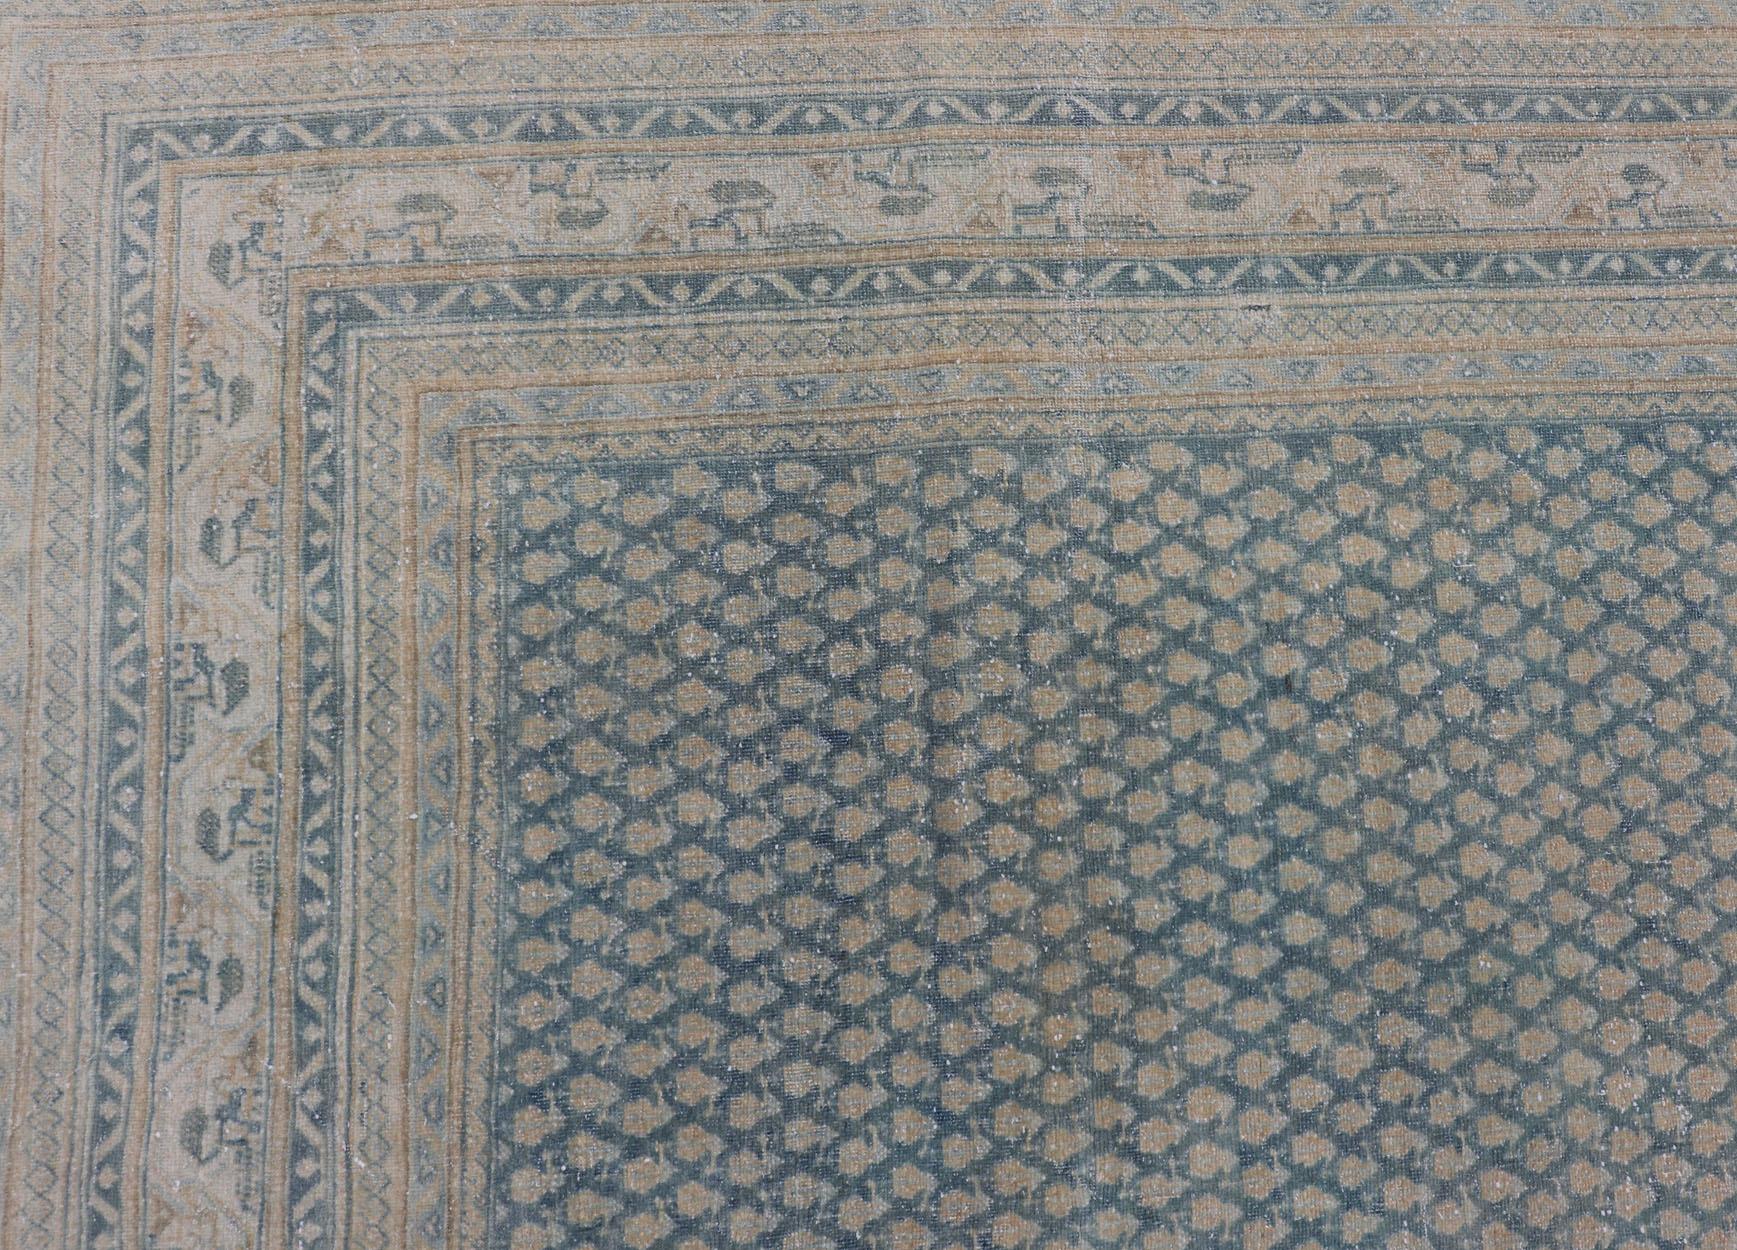 Dieser Täbriz-Teppich zeichnet sich durch eine relativ komplizierte und detaillierte Bordüre und ein völlig spärliches und kleines, sich wiederholendes Stammesmotiv im Mittelfeld aus. Die Farbtöne dieses bezaubernden Teppichs verstärken die Patina